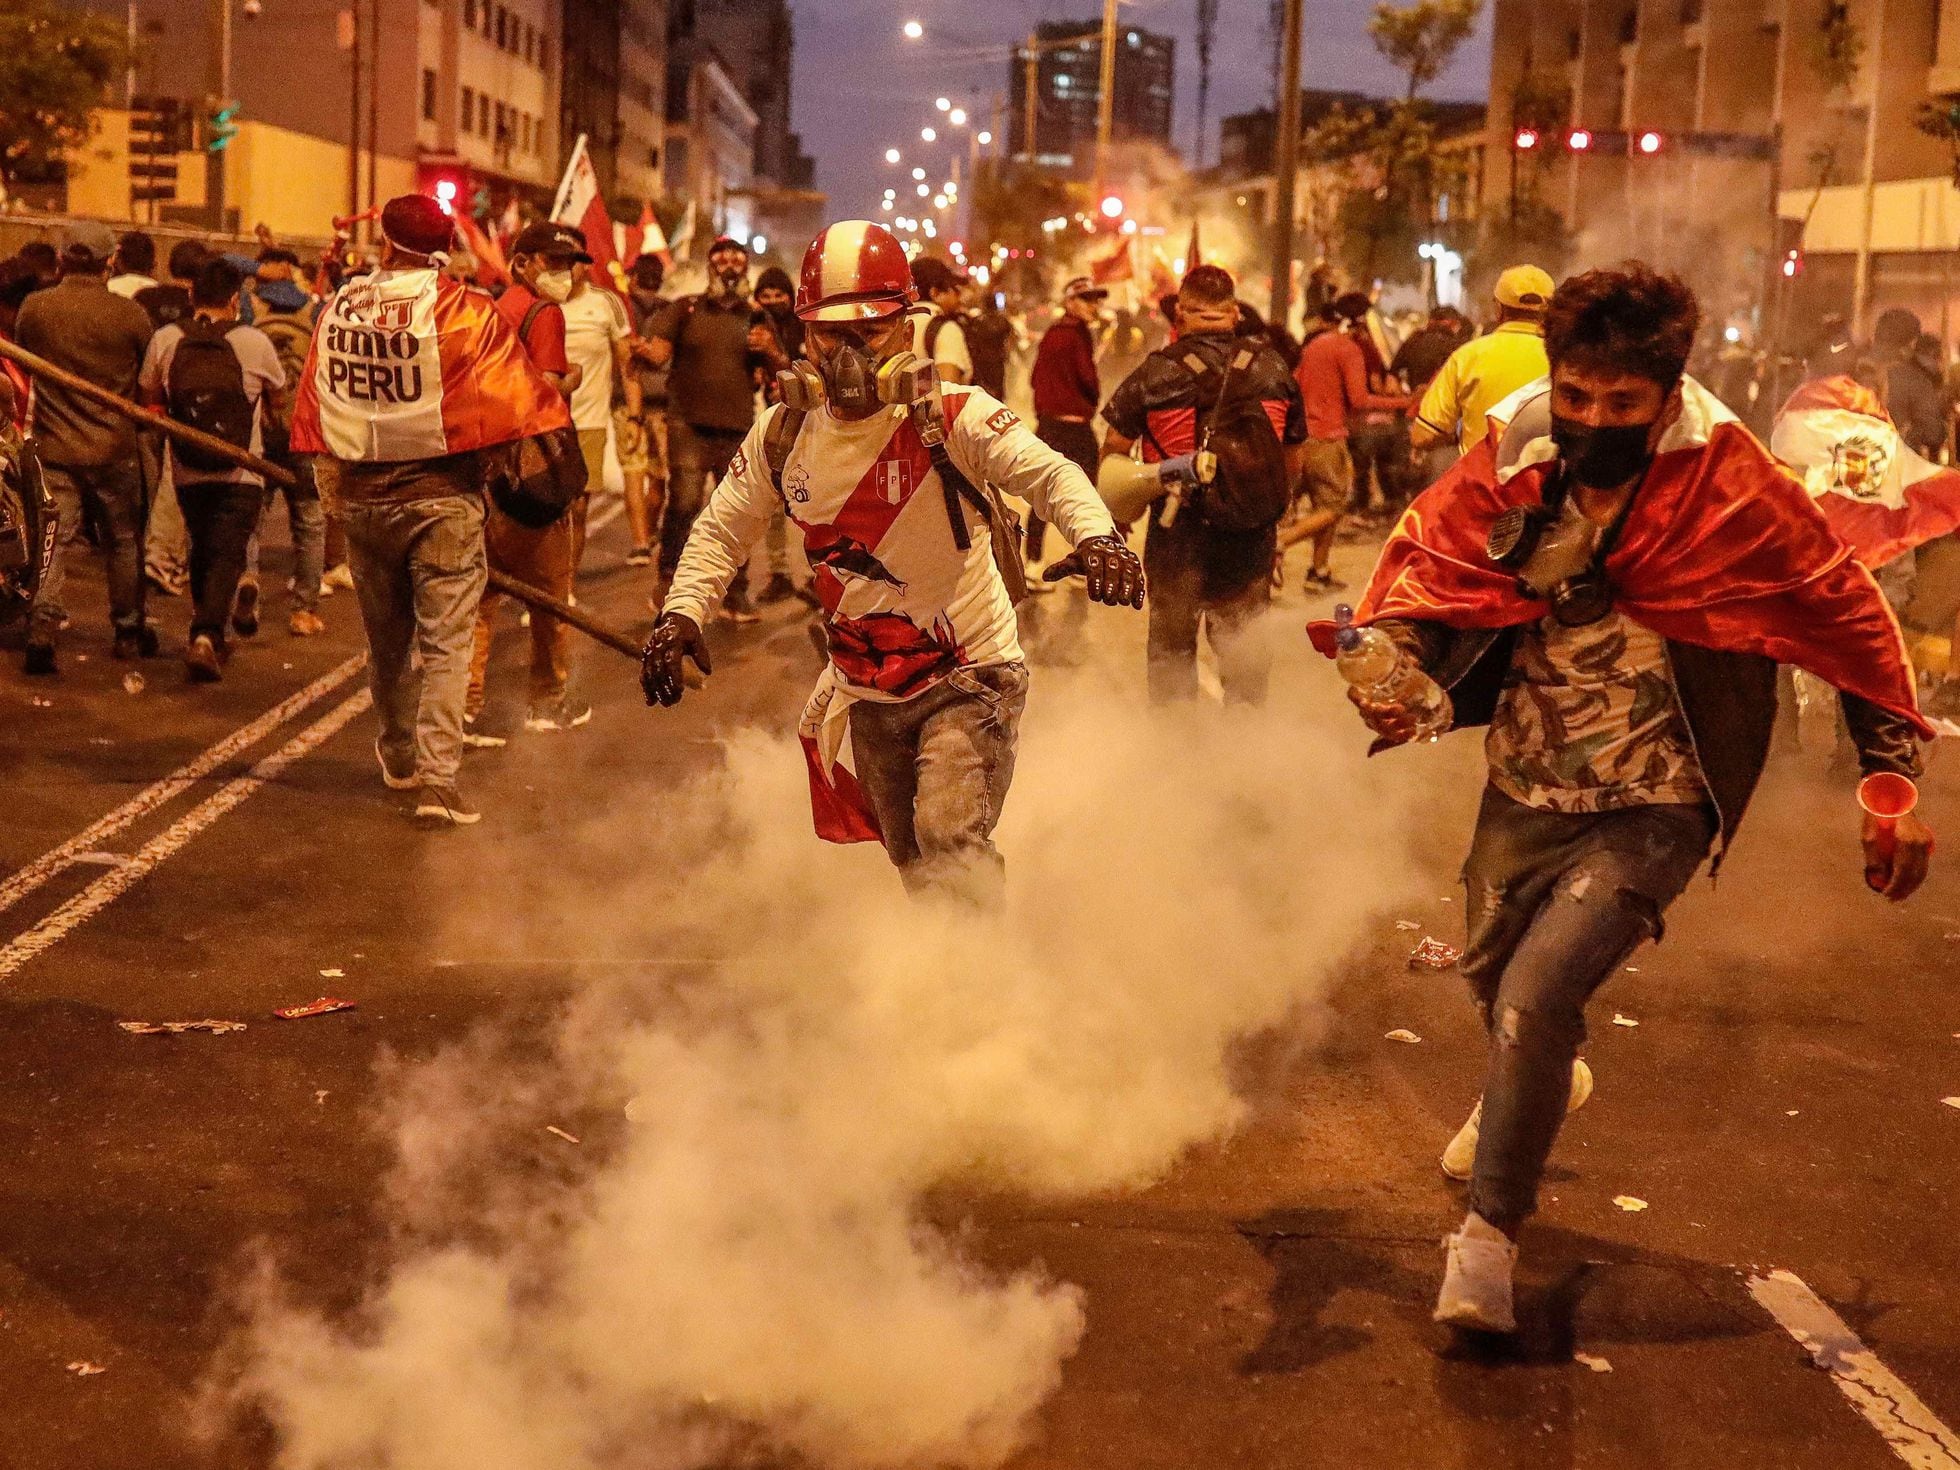 Por qué escala la protesta en Perú? | Internacional | EL PAÍS